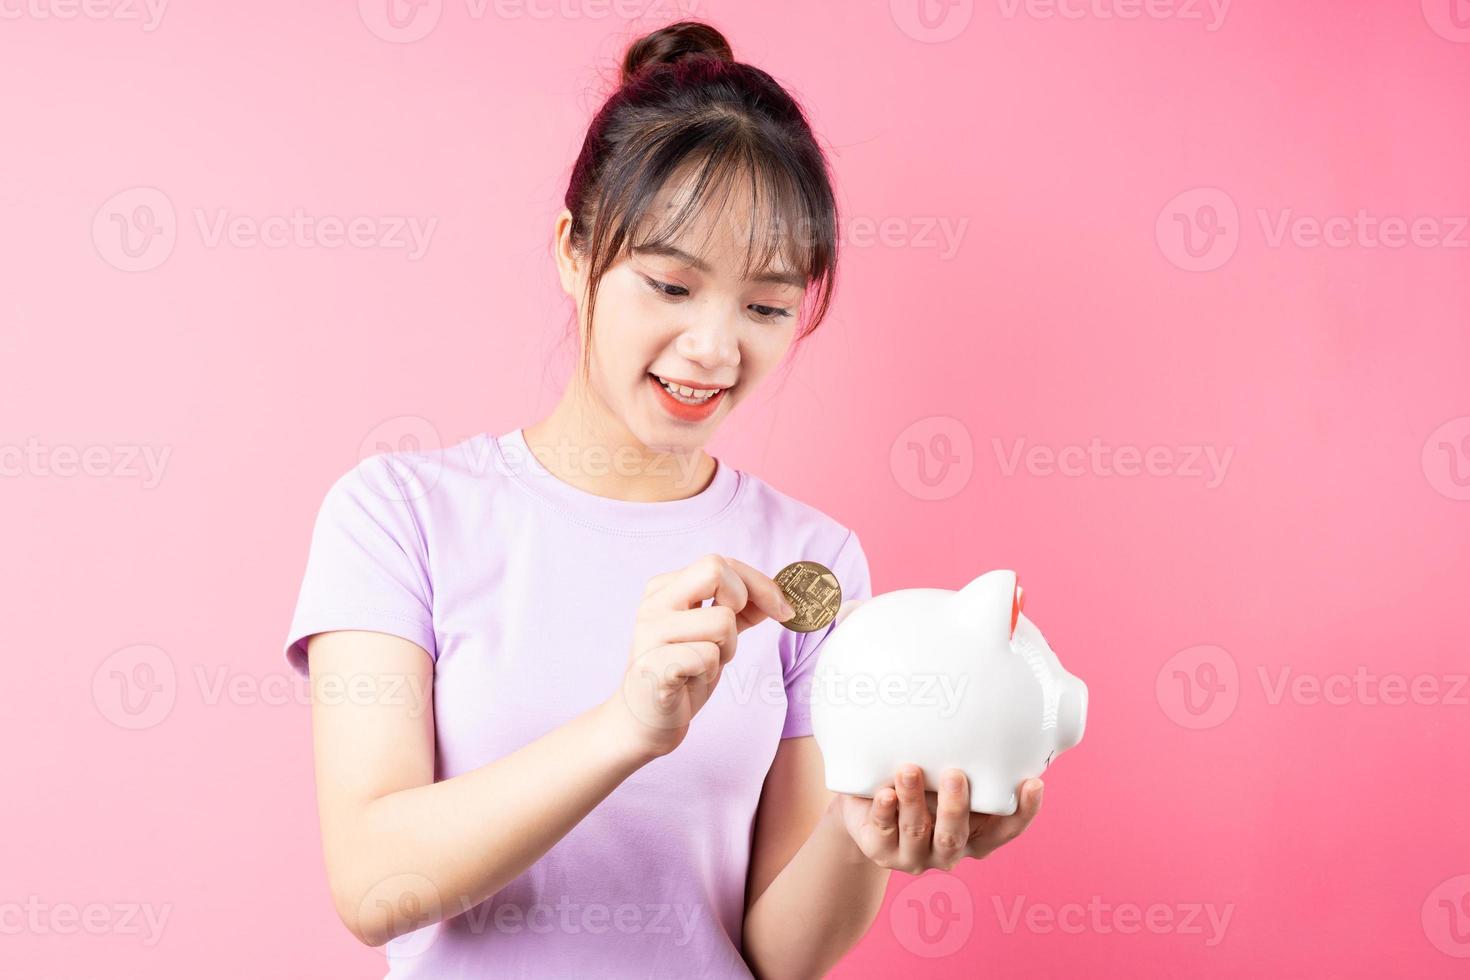 ritratto di ragazza che conia soldi nel maiale, isolato su sfondo rosa foto